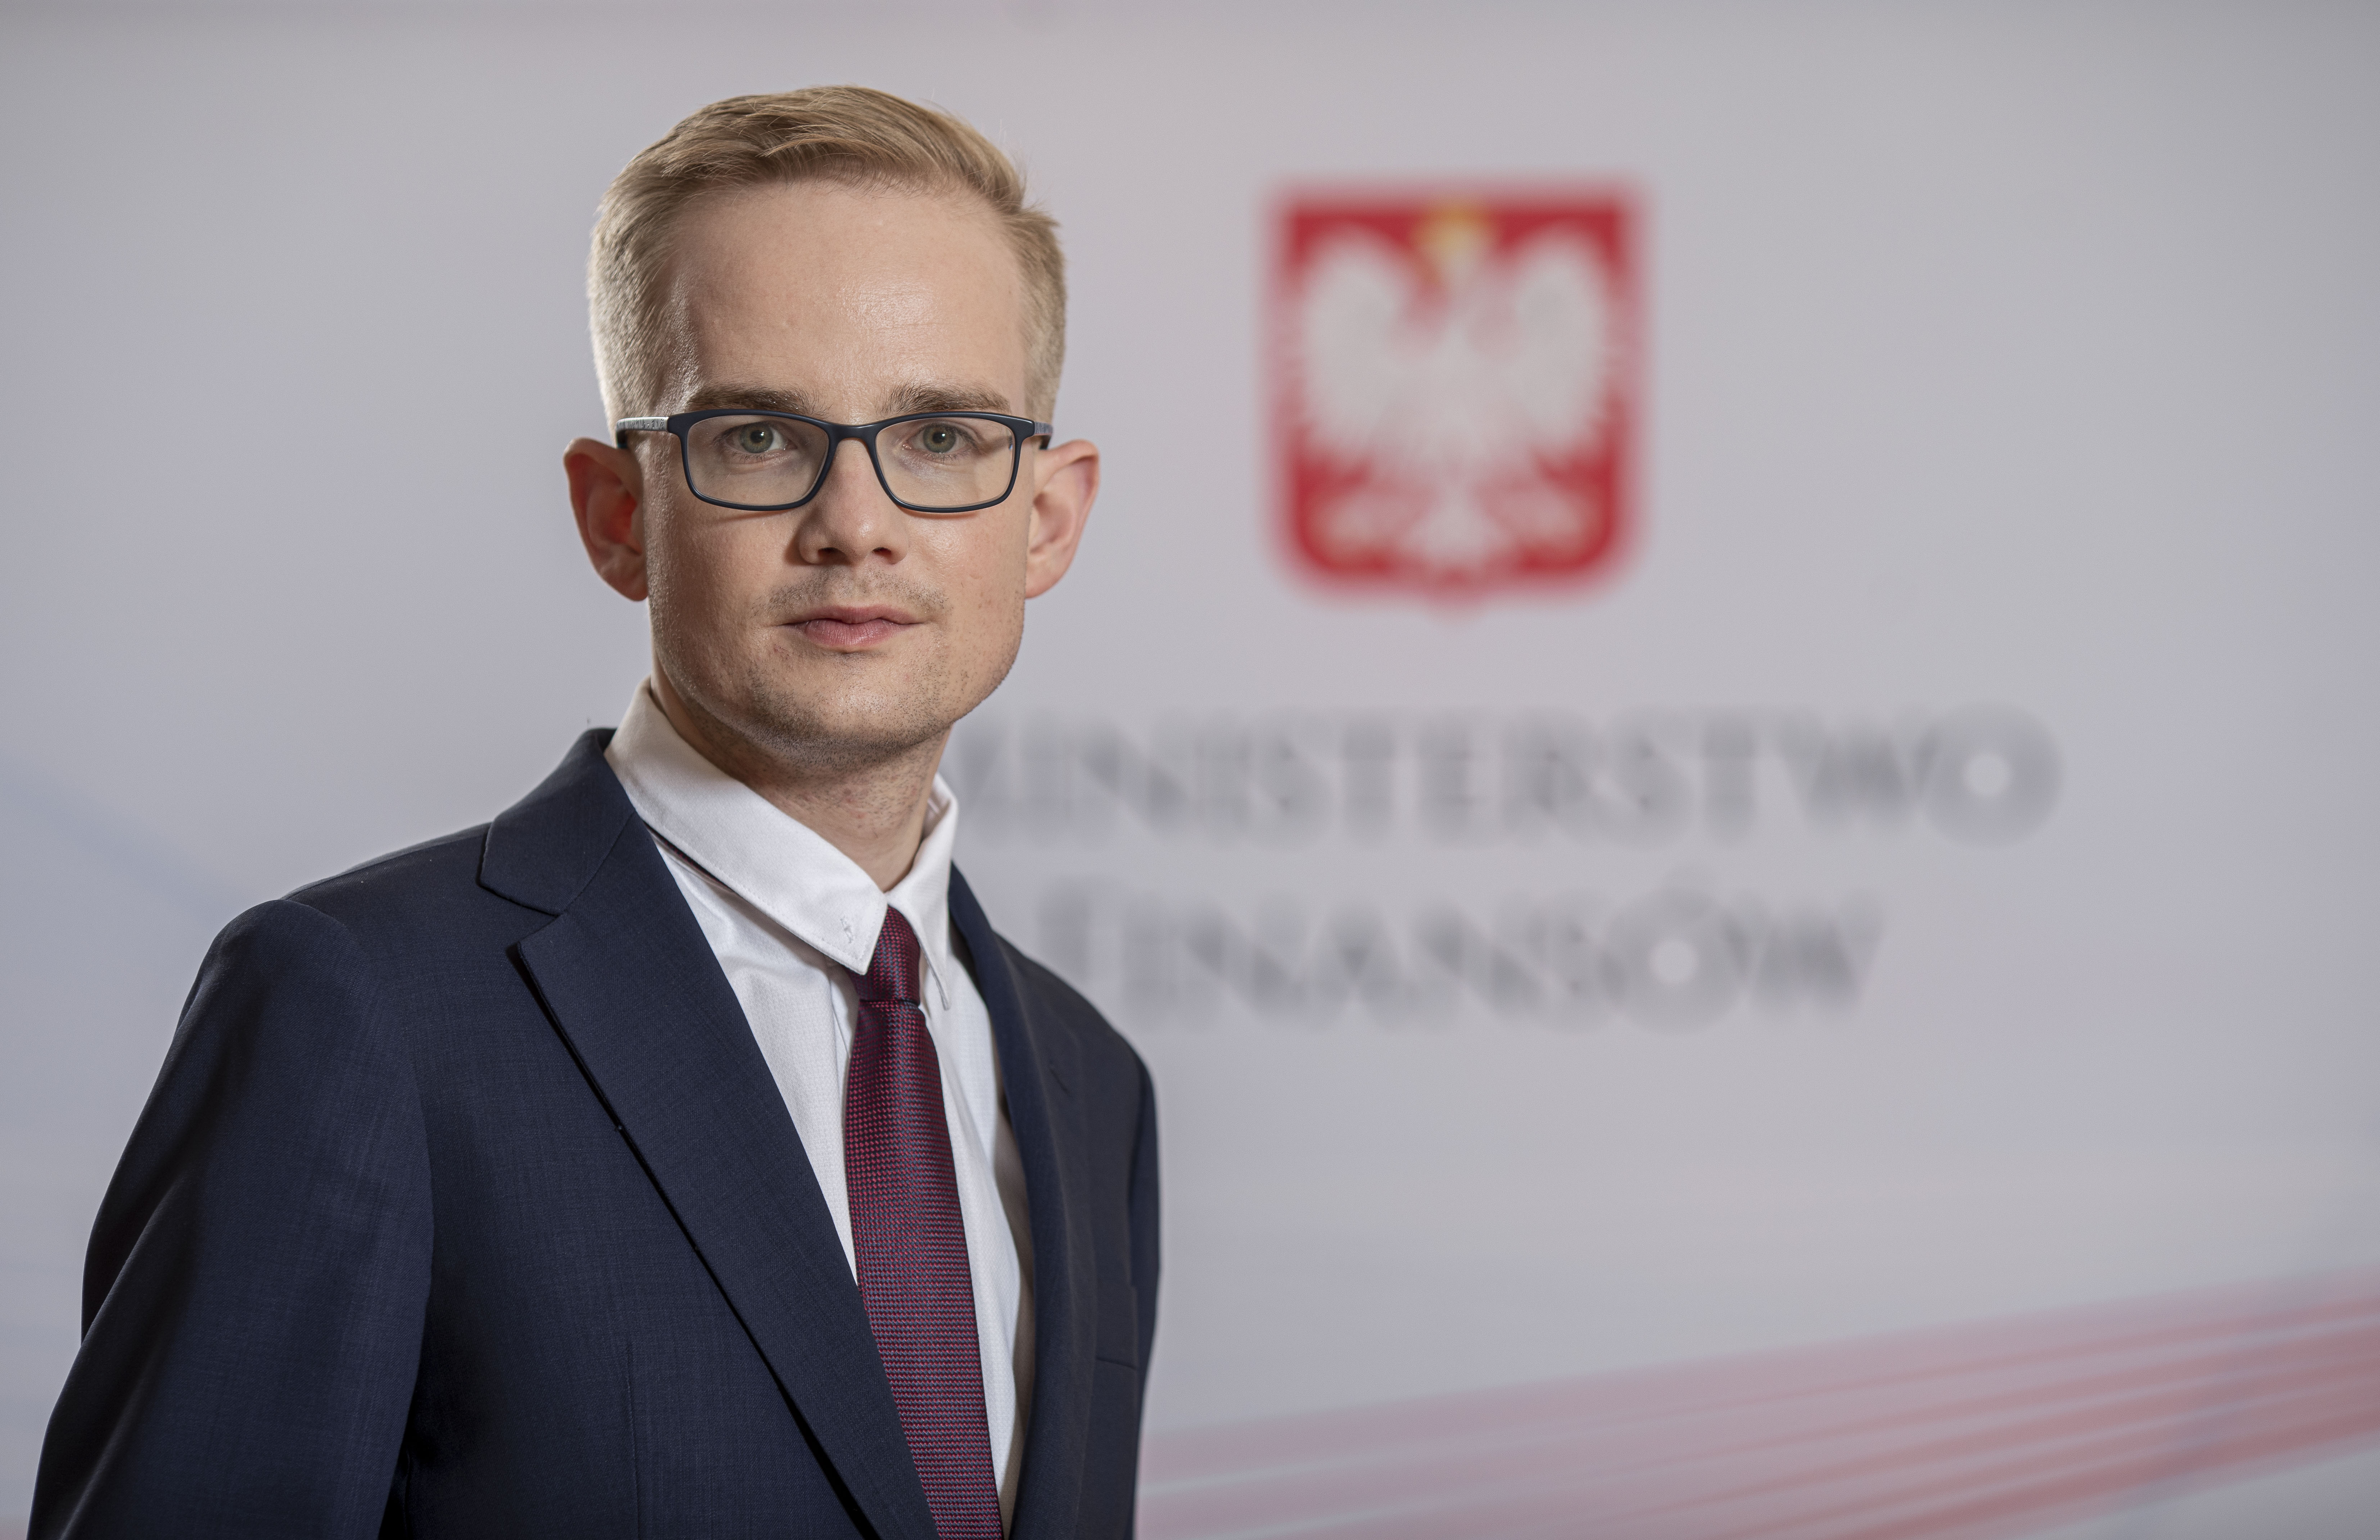 Piotr Patkowski Podsekretarz Stanu, Główny Rzecznik Dyscypliny Finansów Publicznych na tle baneru MF